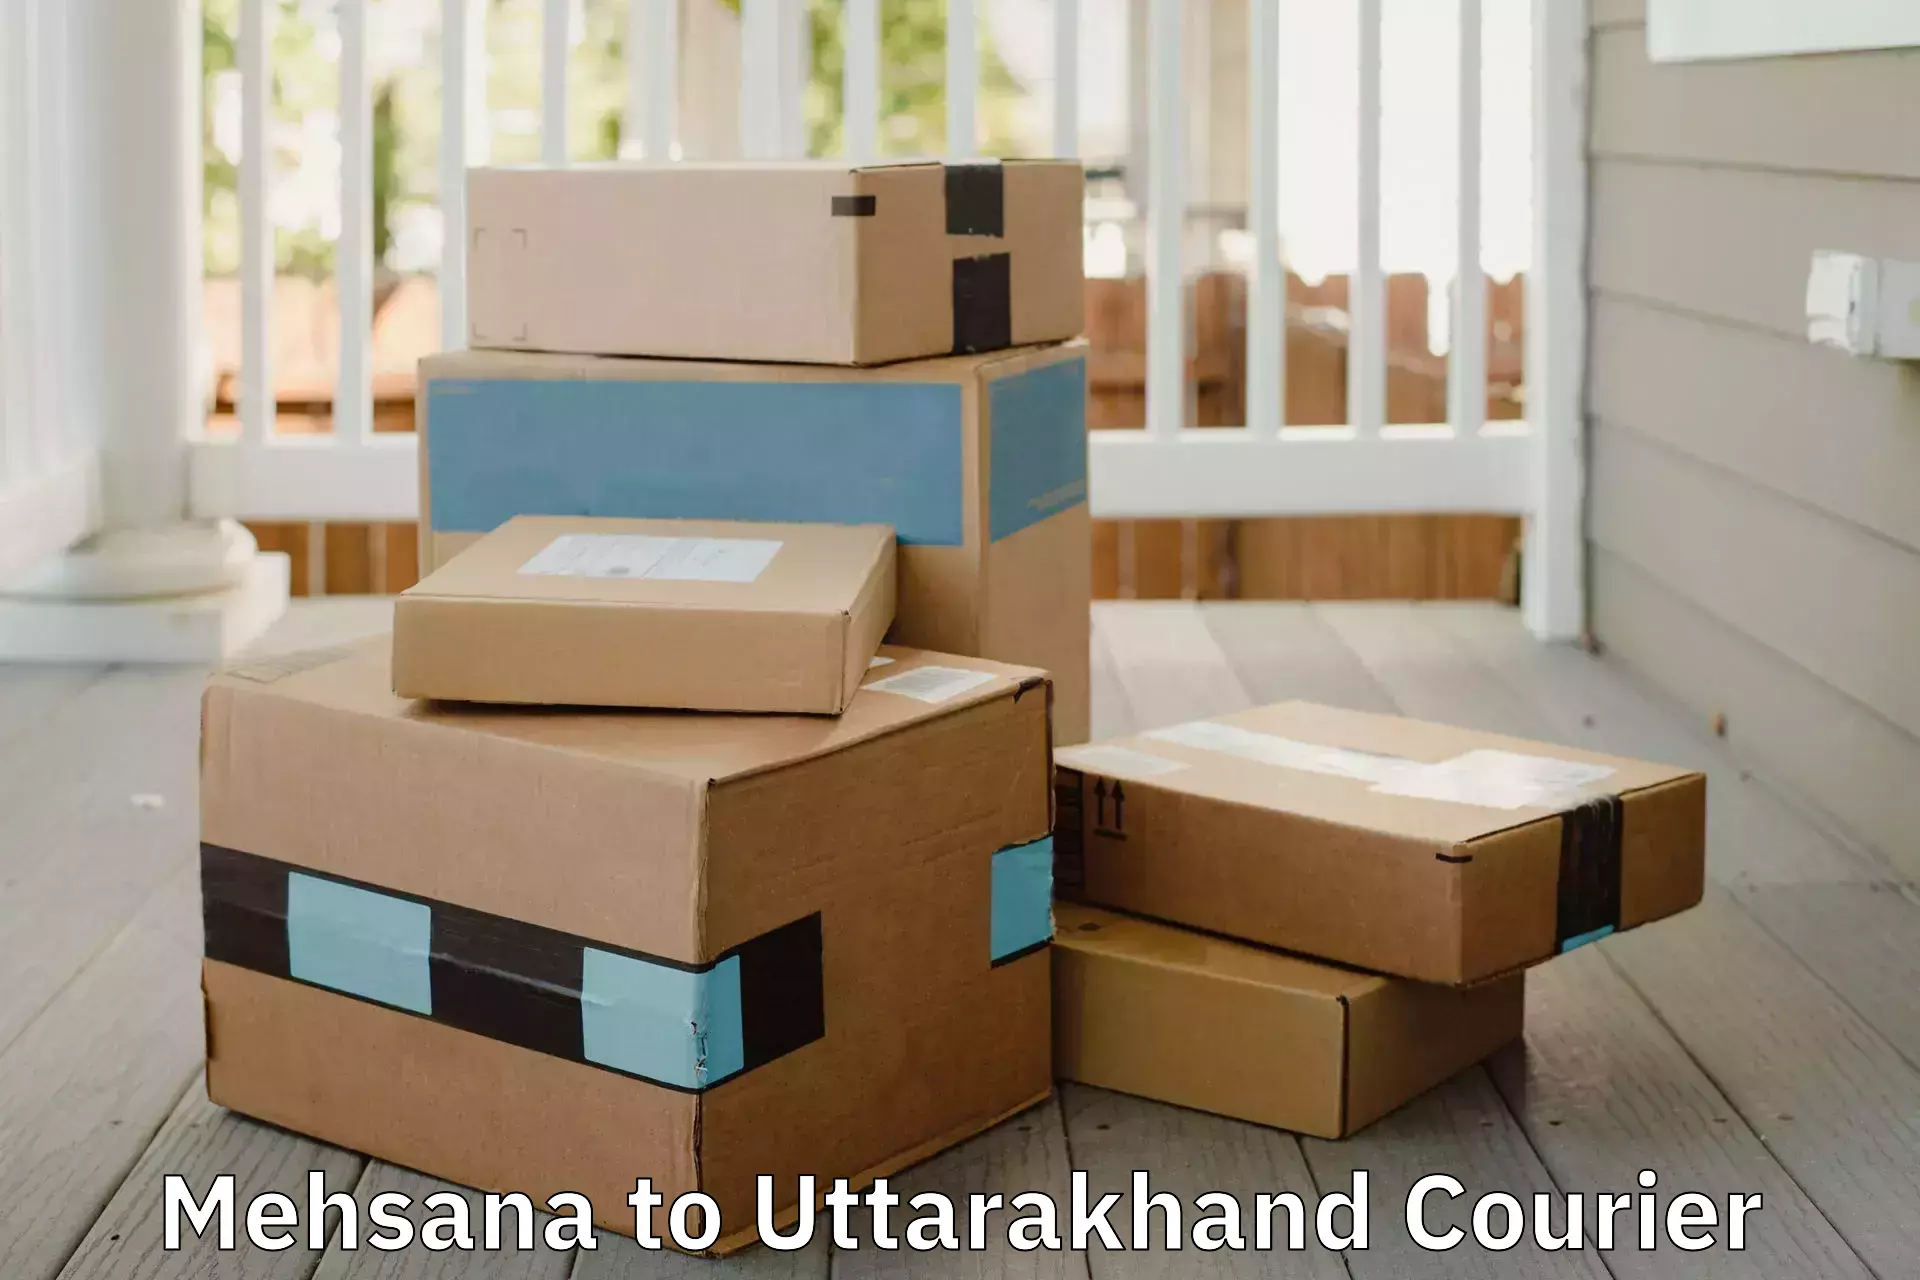 Full-service movers Mehsana to Uttarkashi